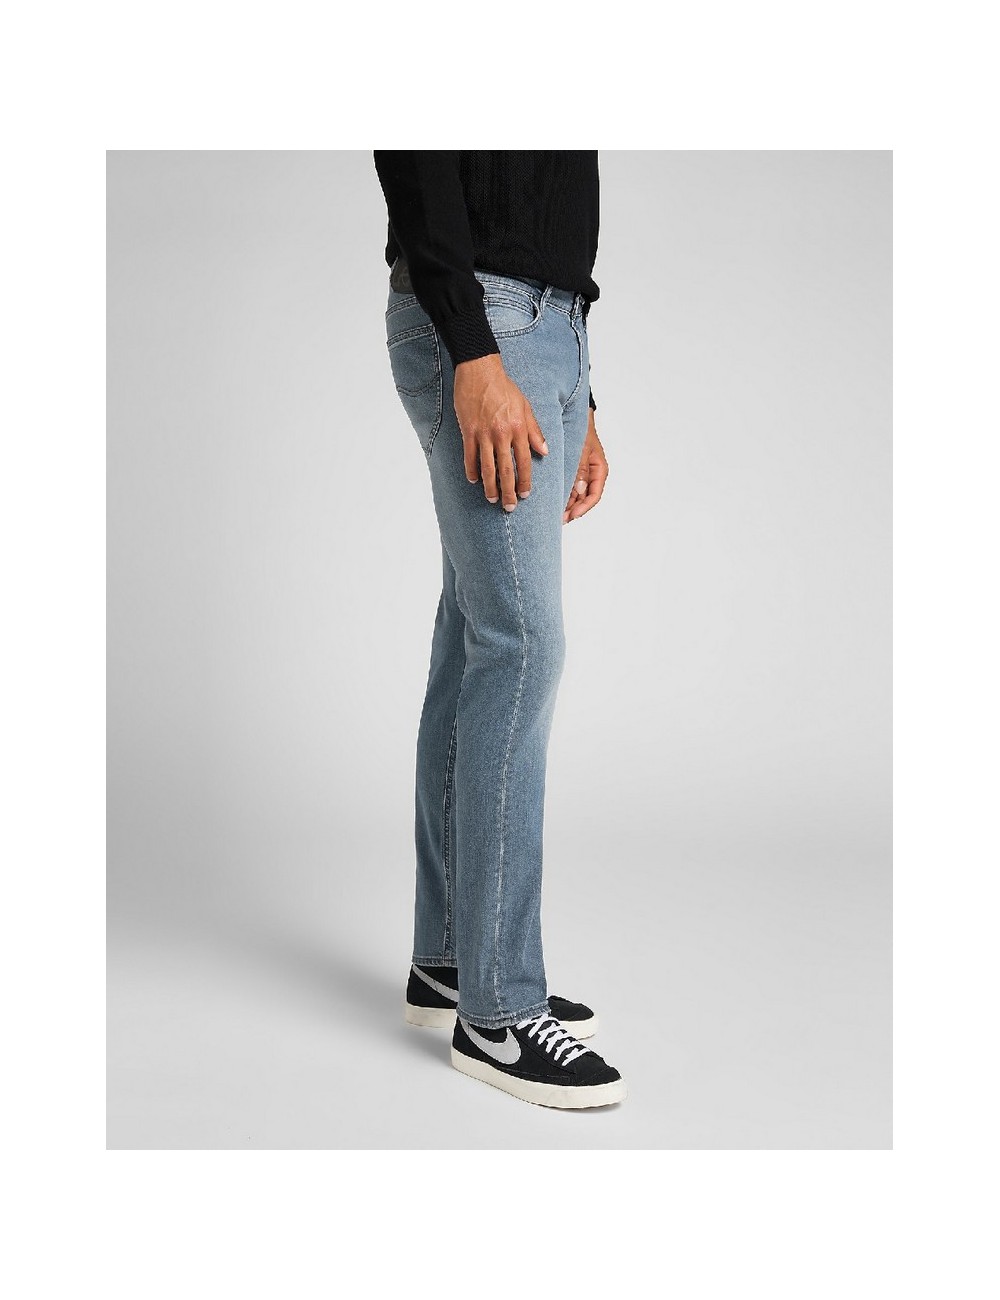 LeeMount Casual Wear Mens Slim Fit Cotton Hosiery Trousers Size 2840  Inch